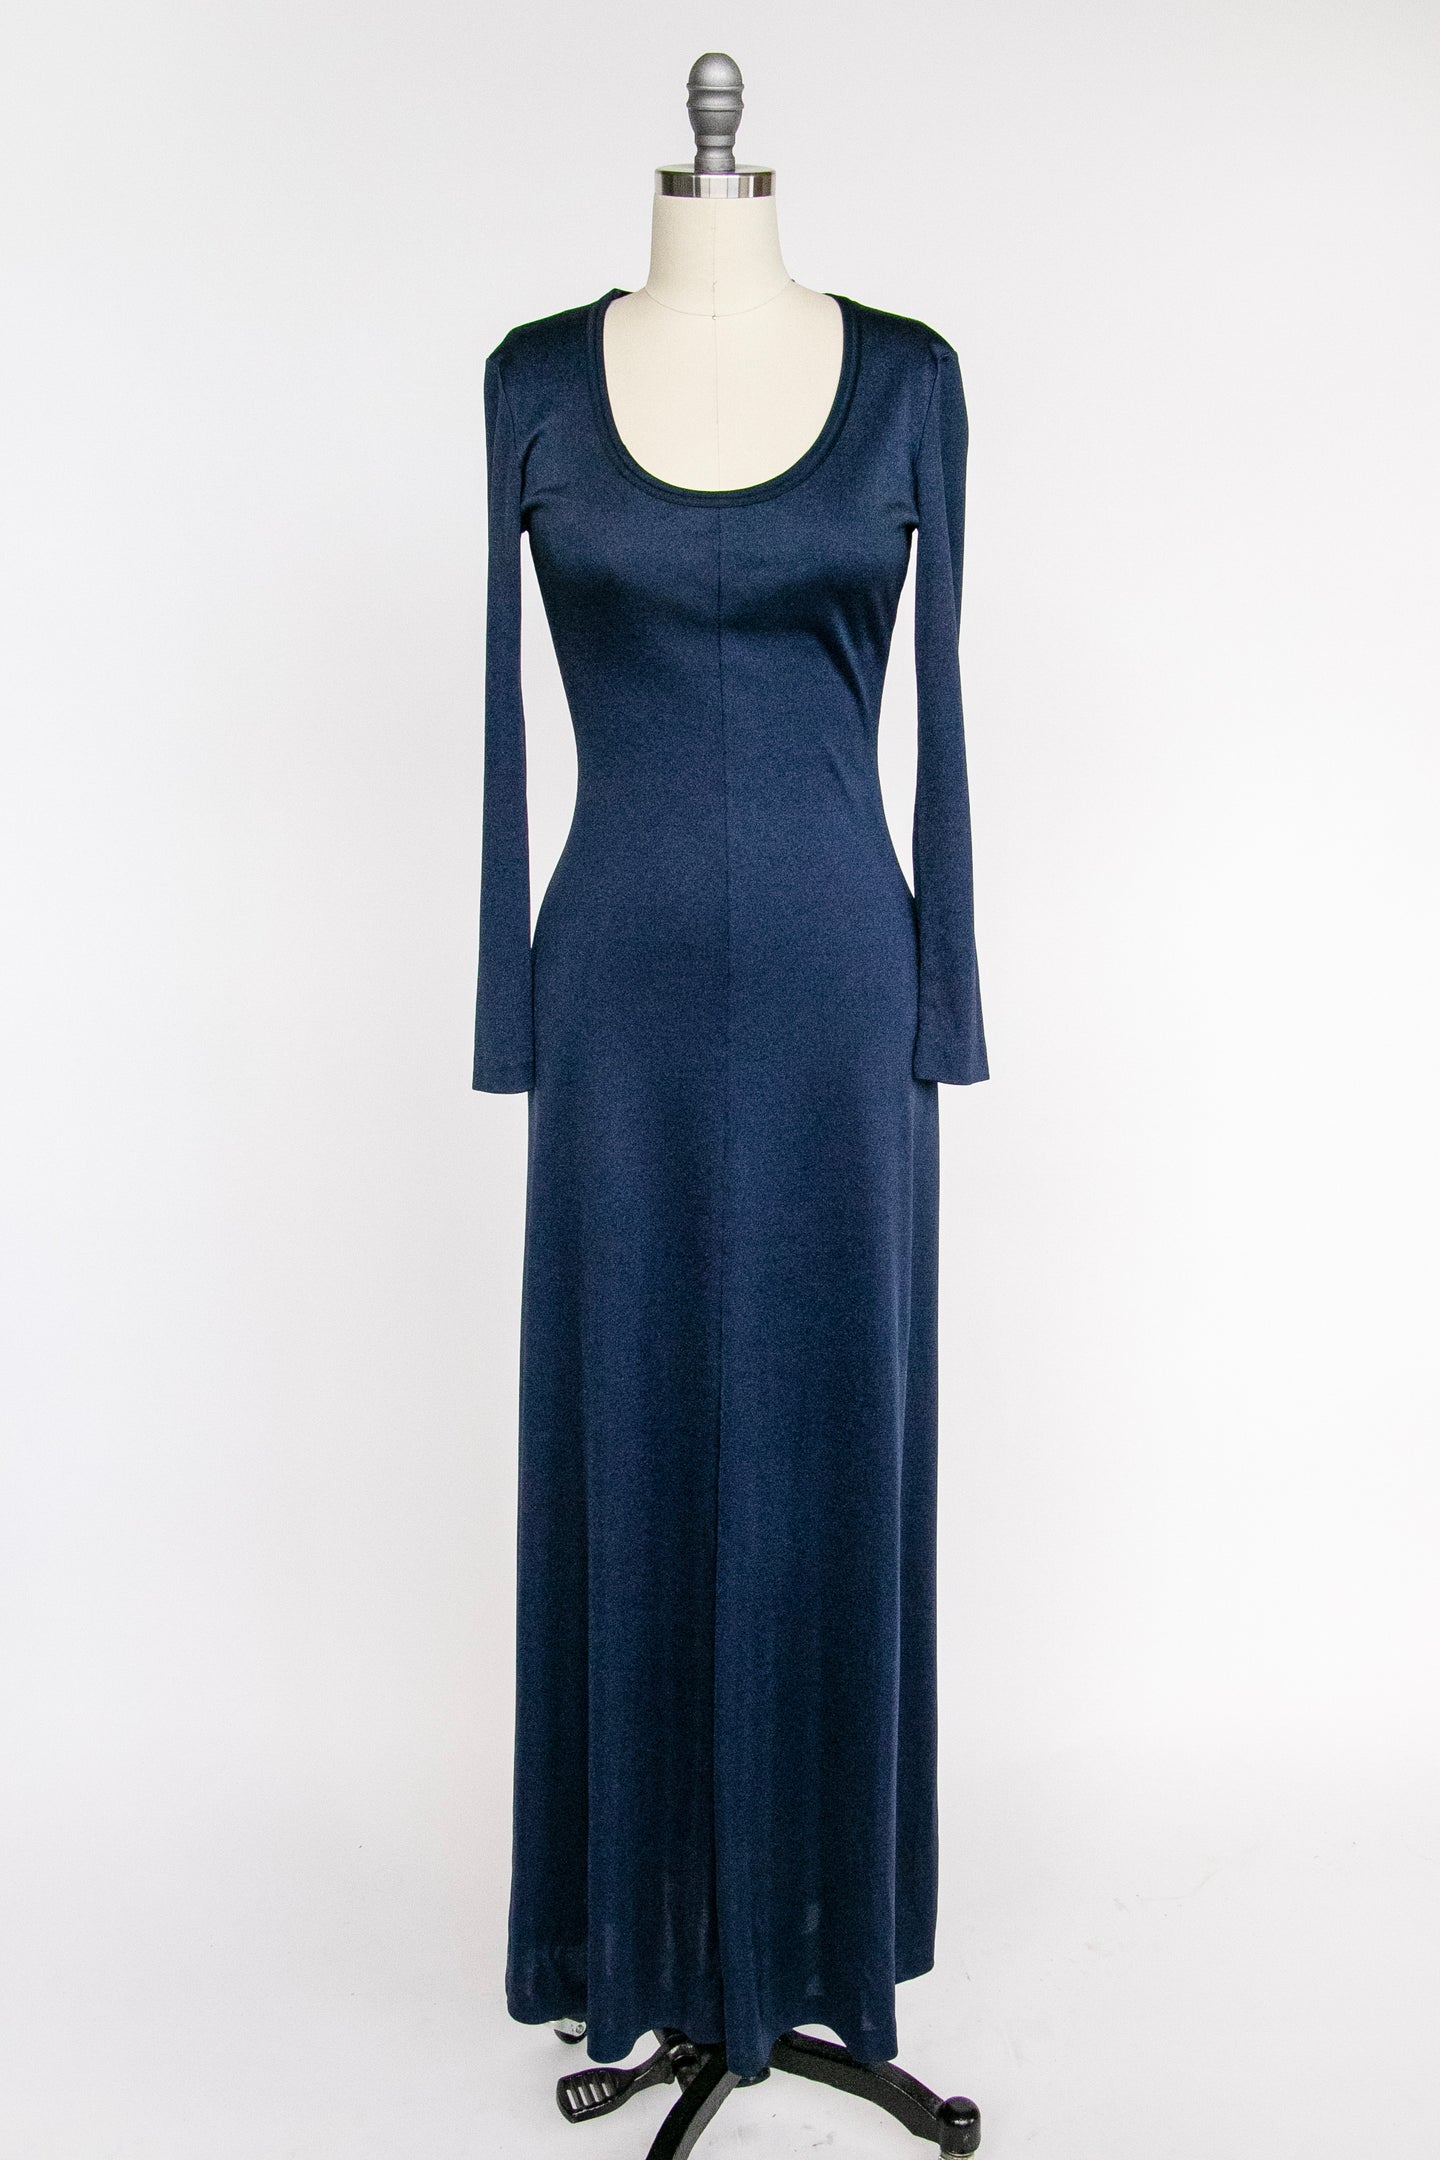 1970s Maxi Dress  Blue Knit S